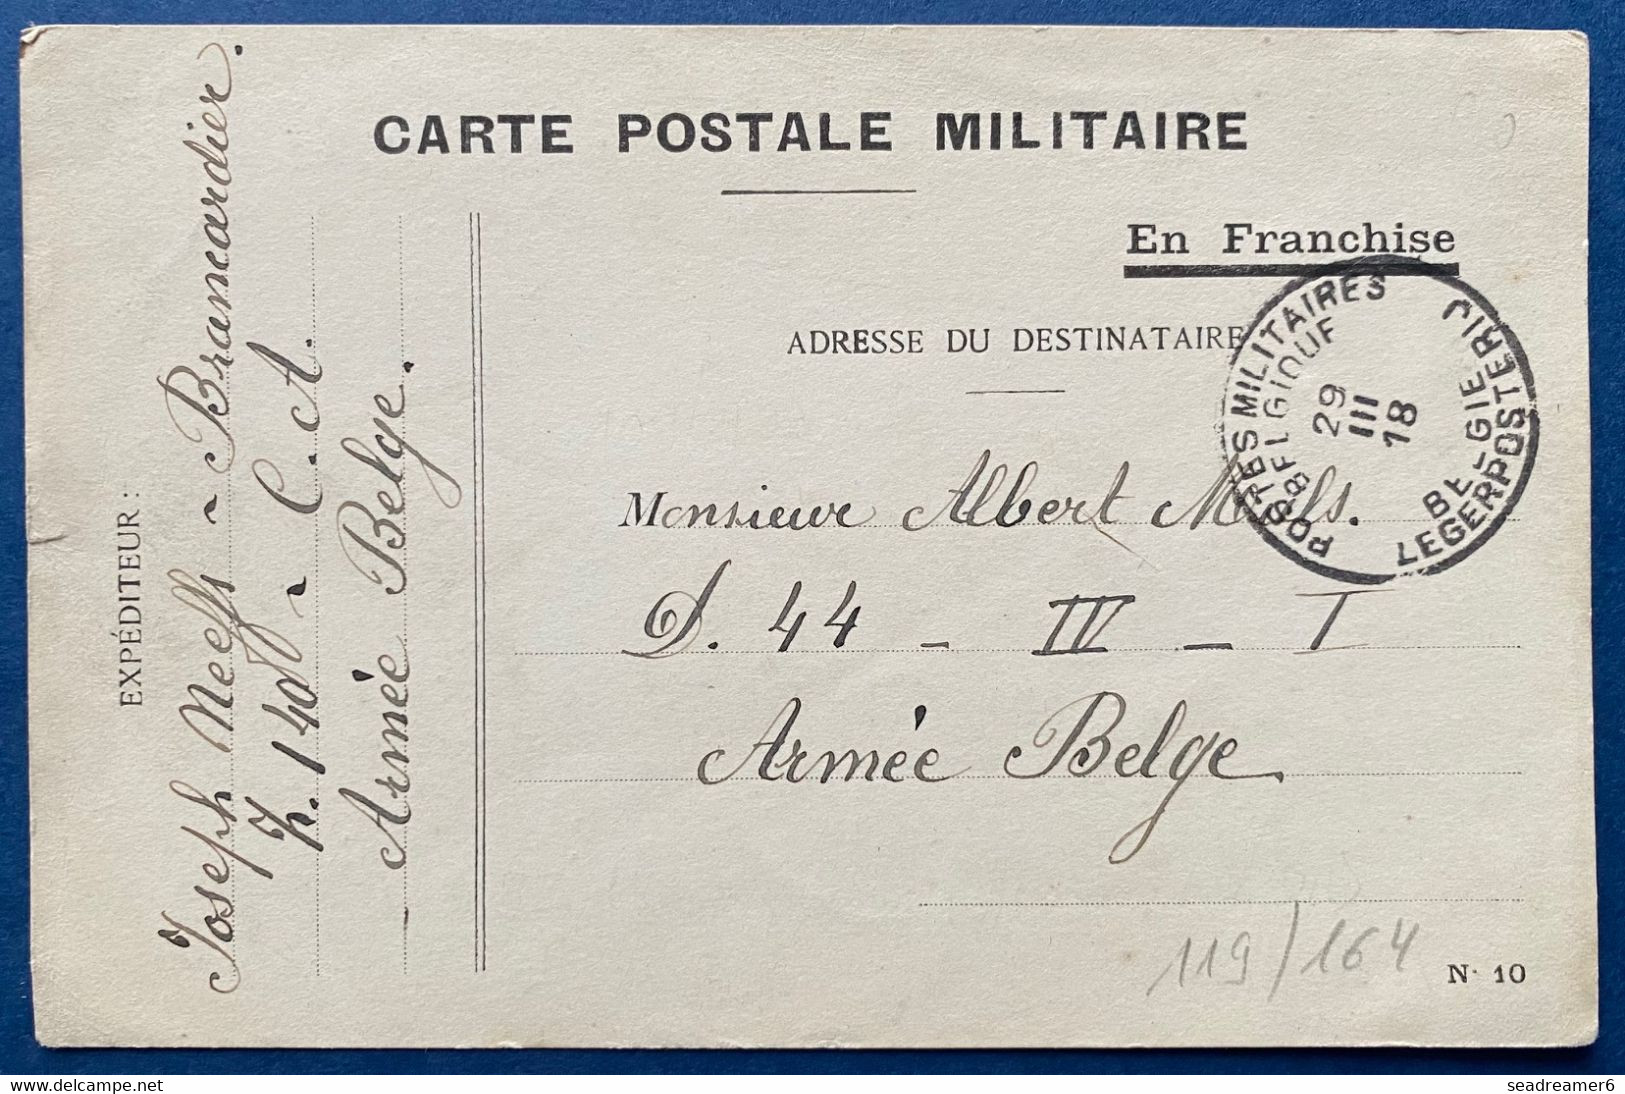 Carte Postale Militaire En Franchise Type N°10 Obl Dateur 29 Mars 1918 Postes Militaires Belgique PMB Pour Un Soldat TTB - Belgische Armee